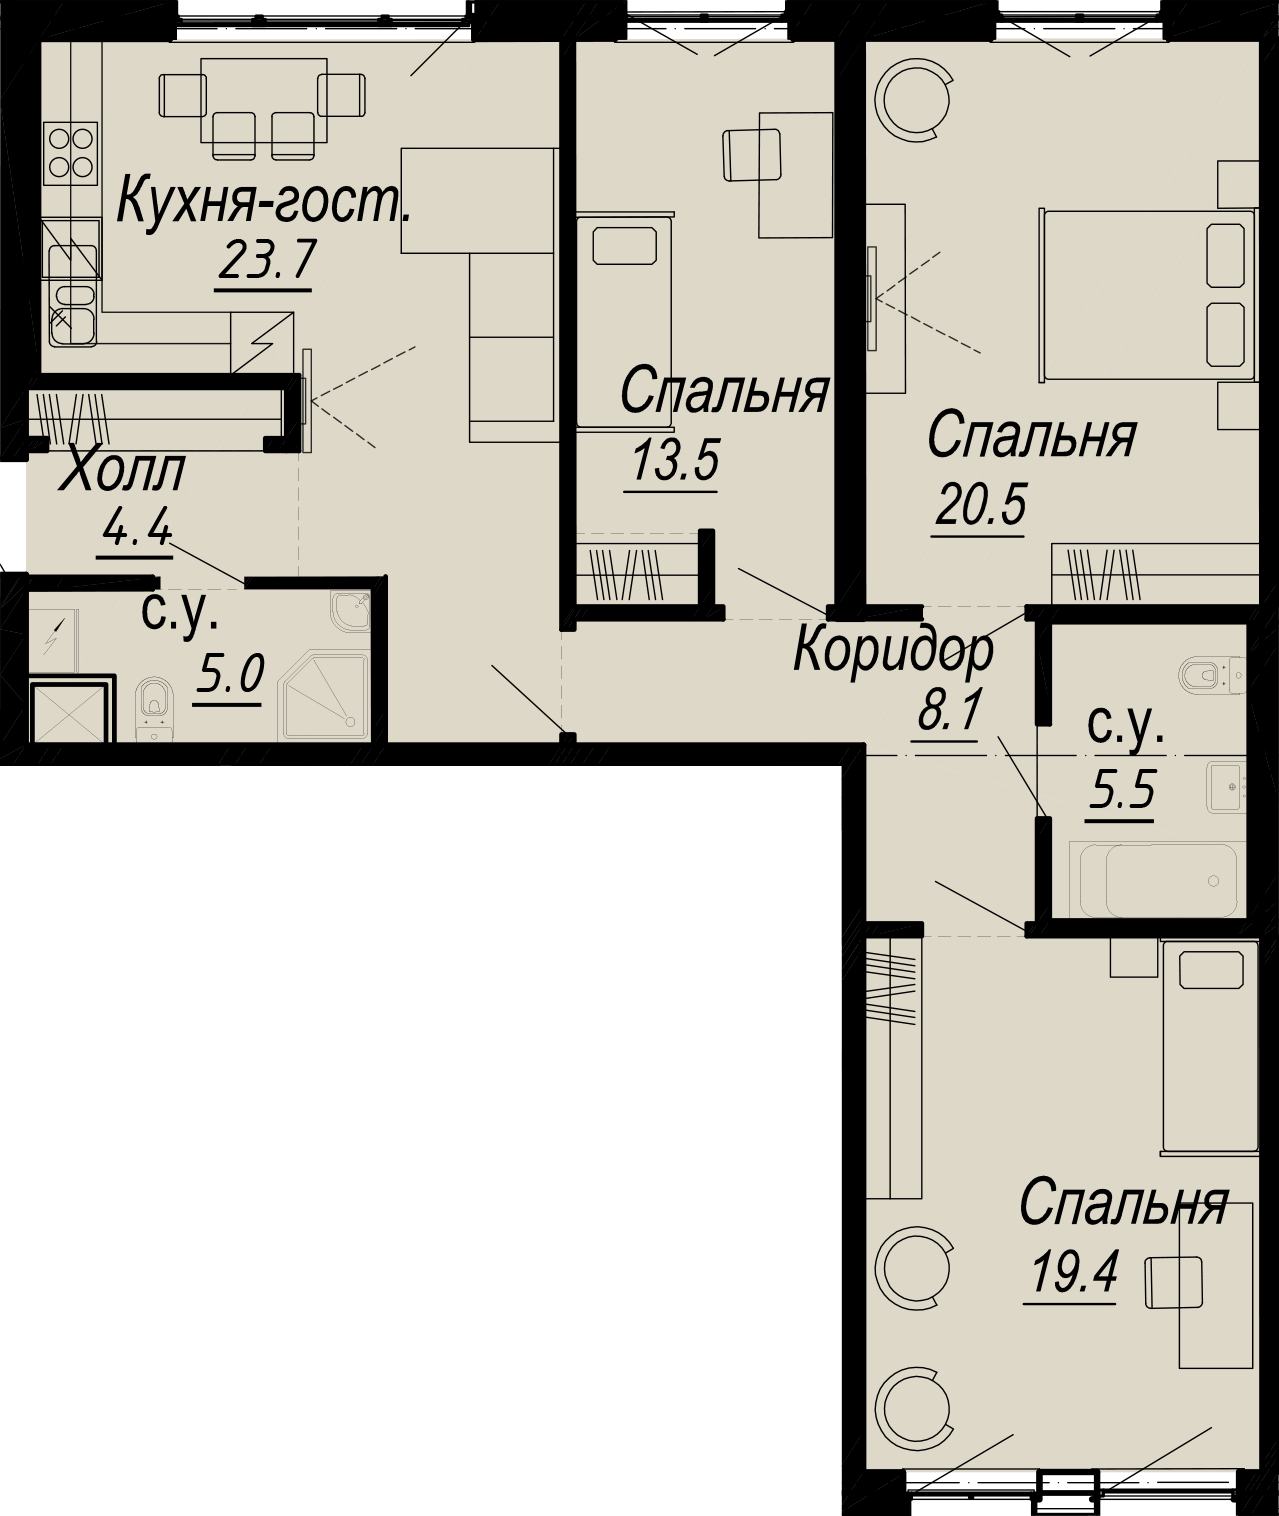 3-комнатная квартира  №4-3 в Meltzer Hall: 101.95 м², этаж 3 - купить в Санкт-Петербурге